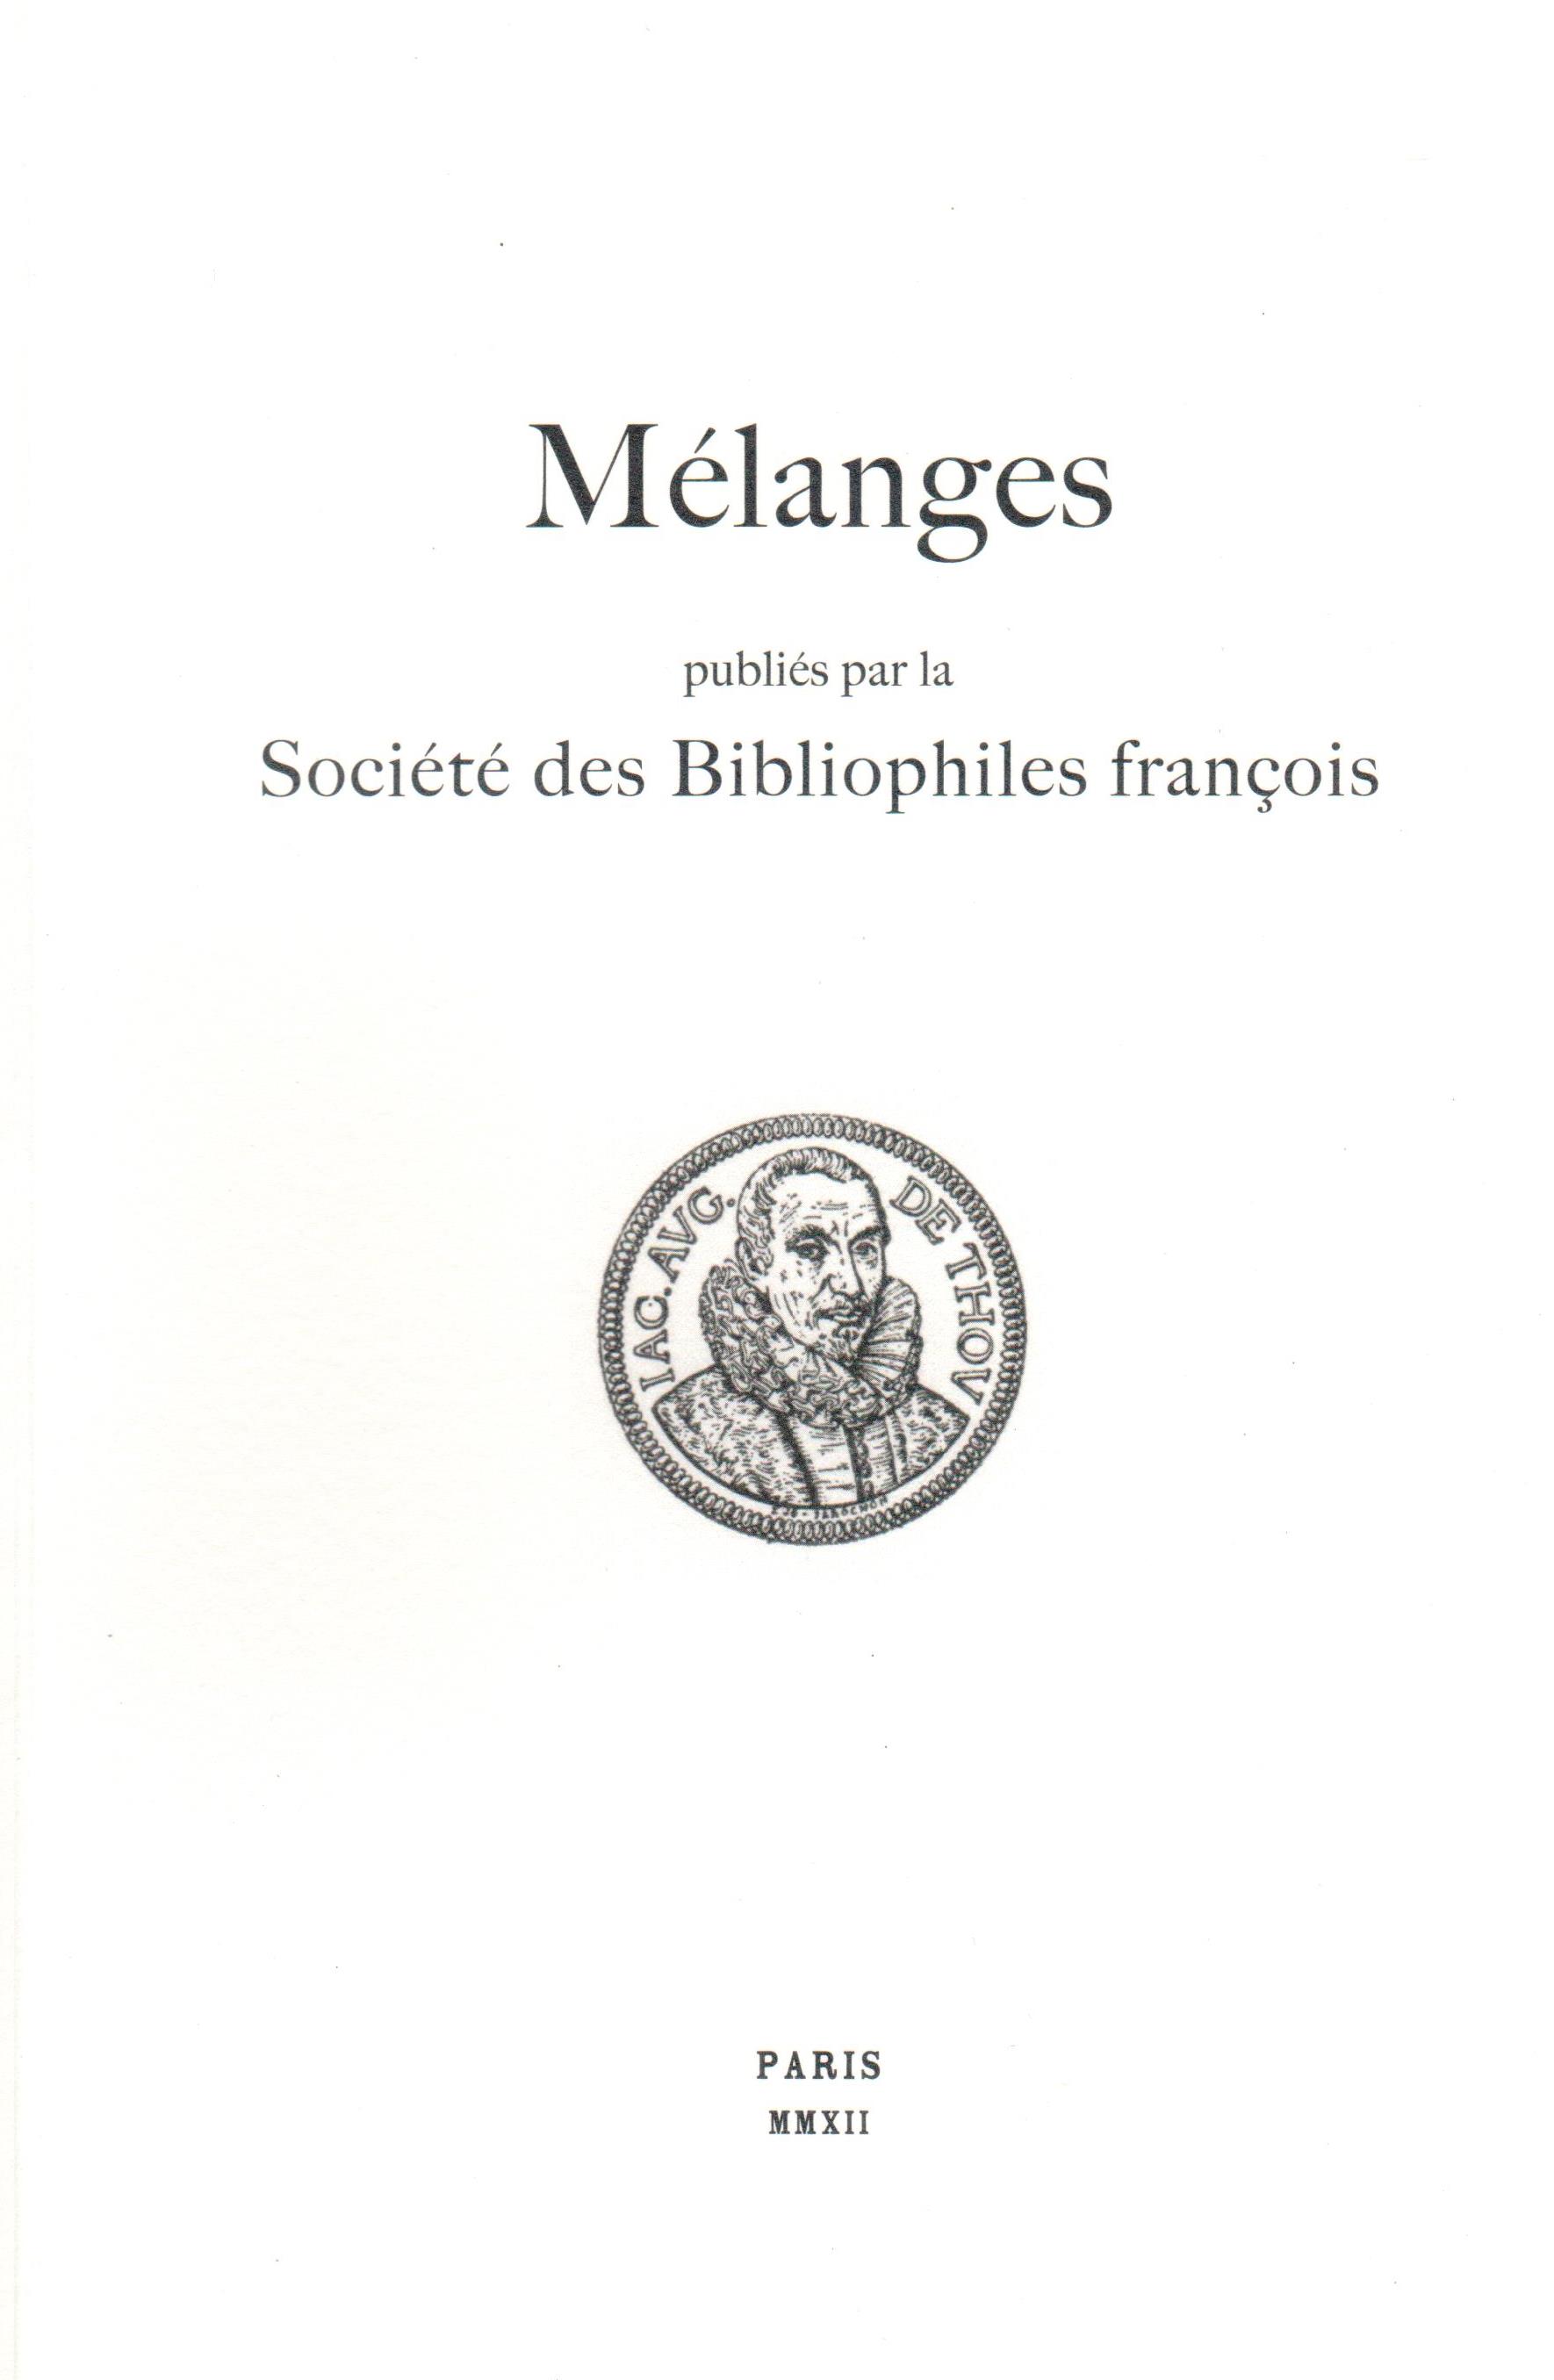 Société des Bibliophiles François